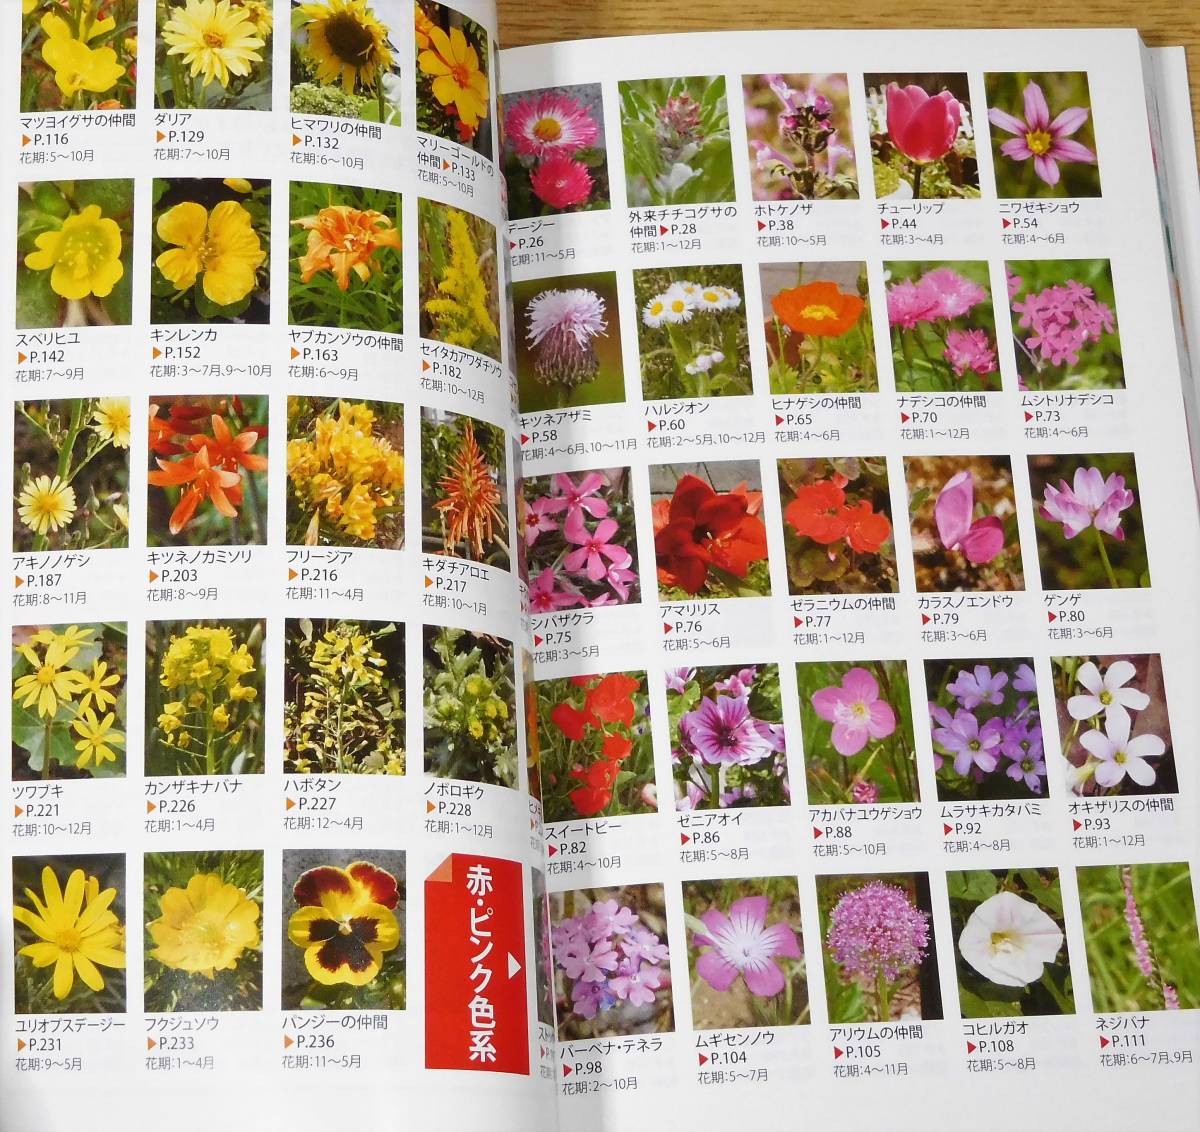  прогулка. цветок иллюстрированная книга 507 вид все цвет сезон другой . легко понять 1 иен ~